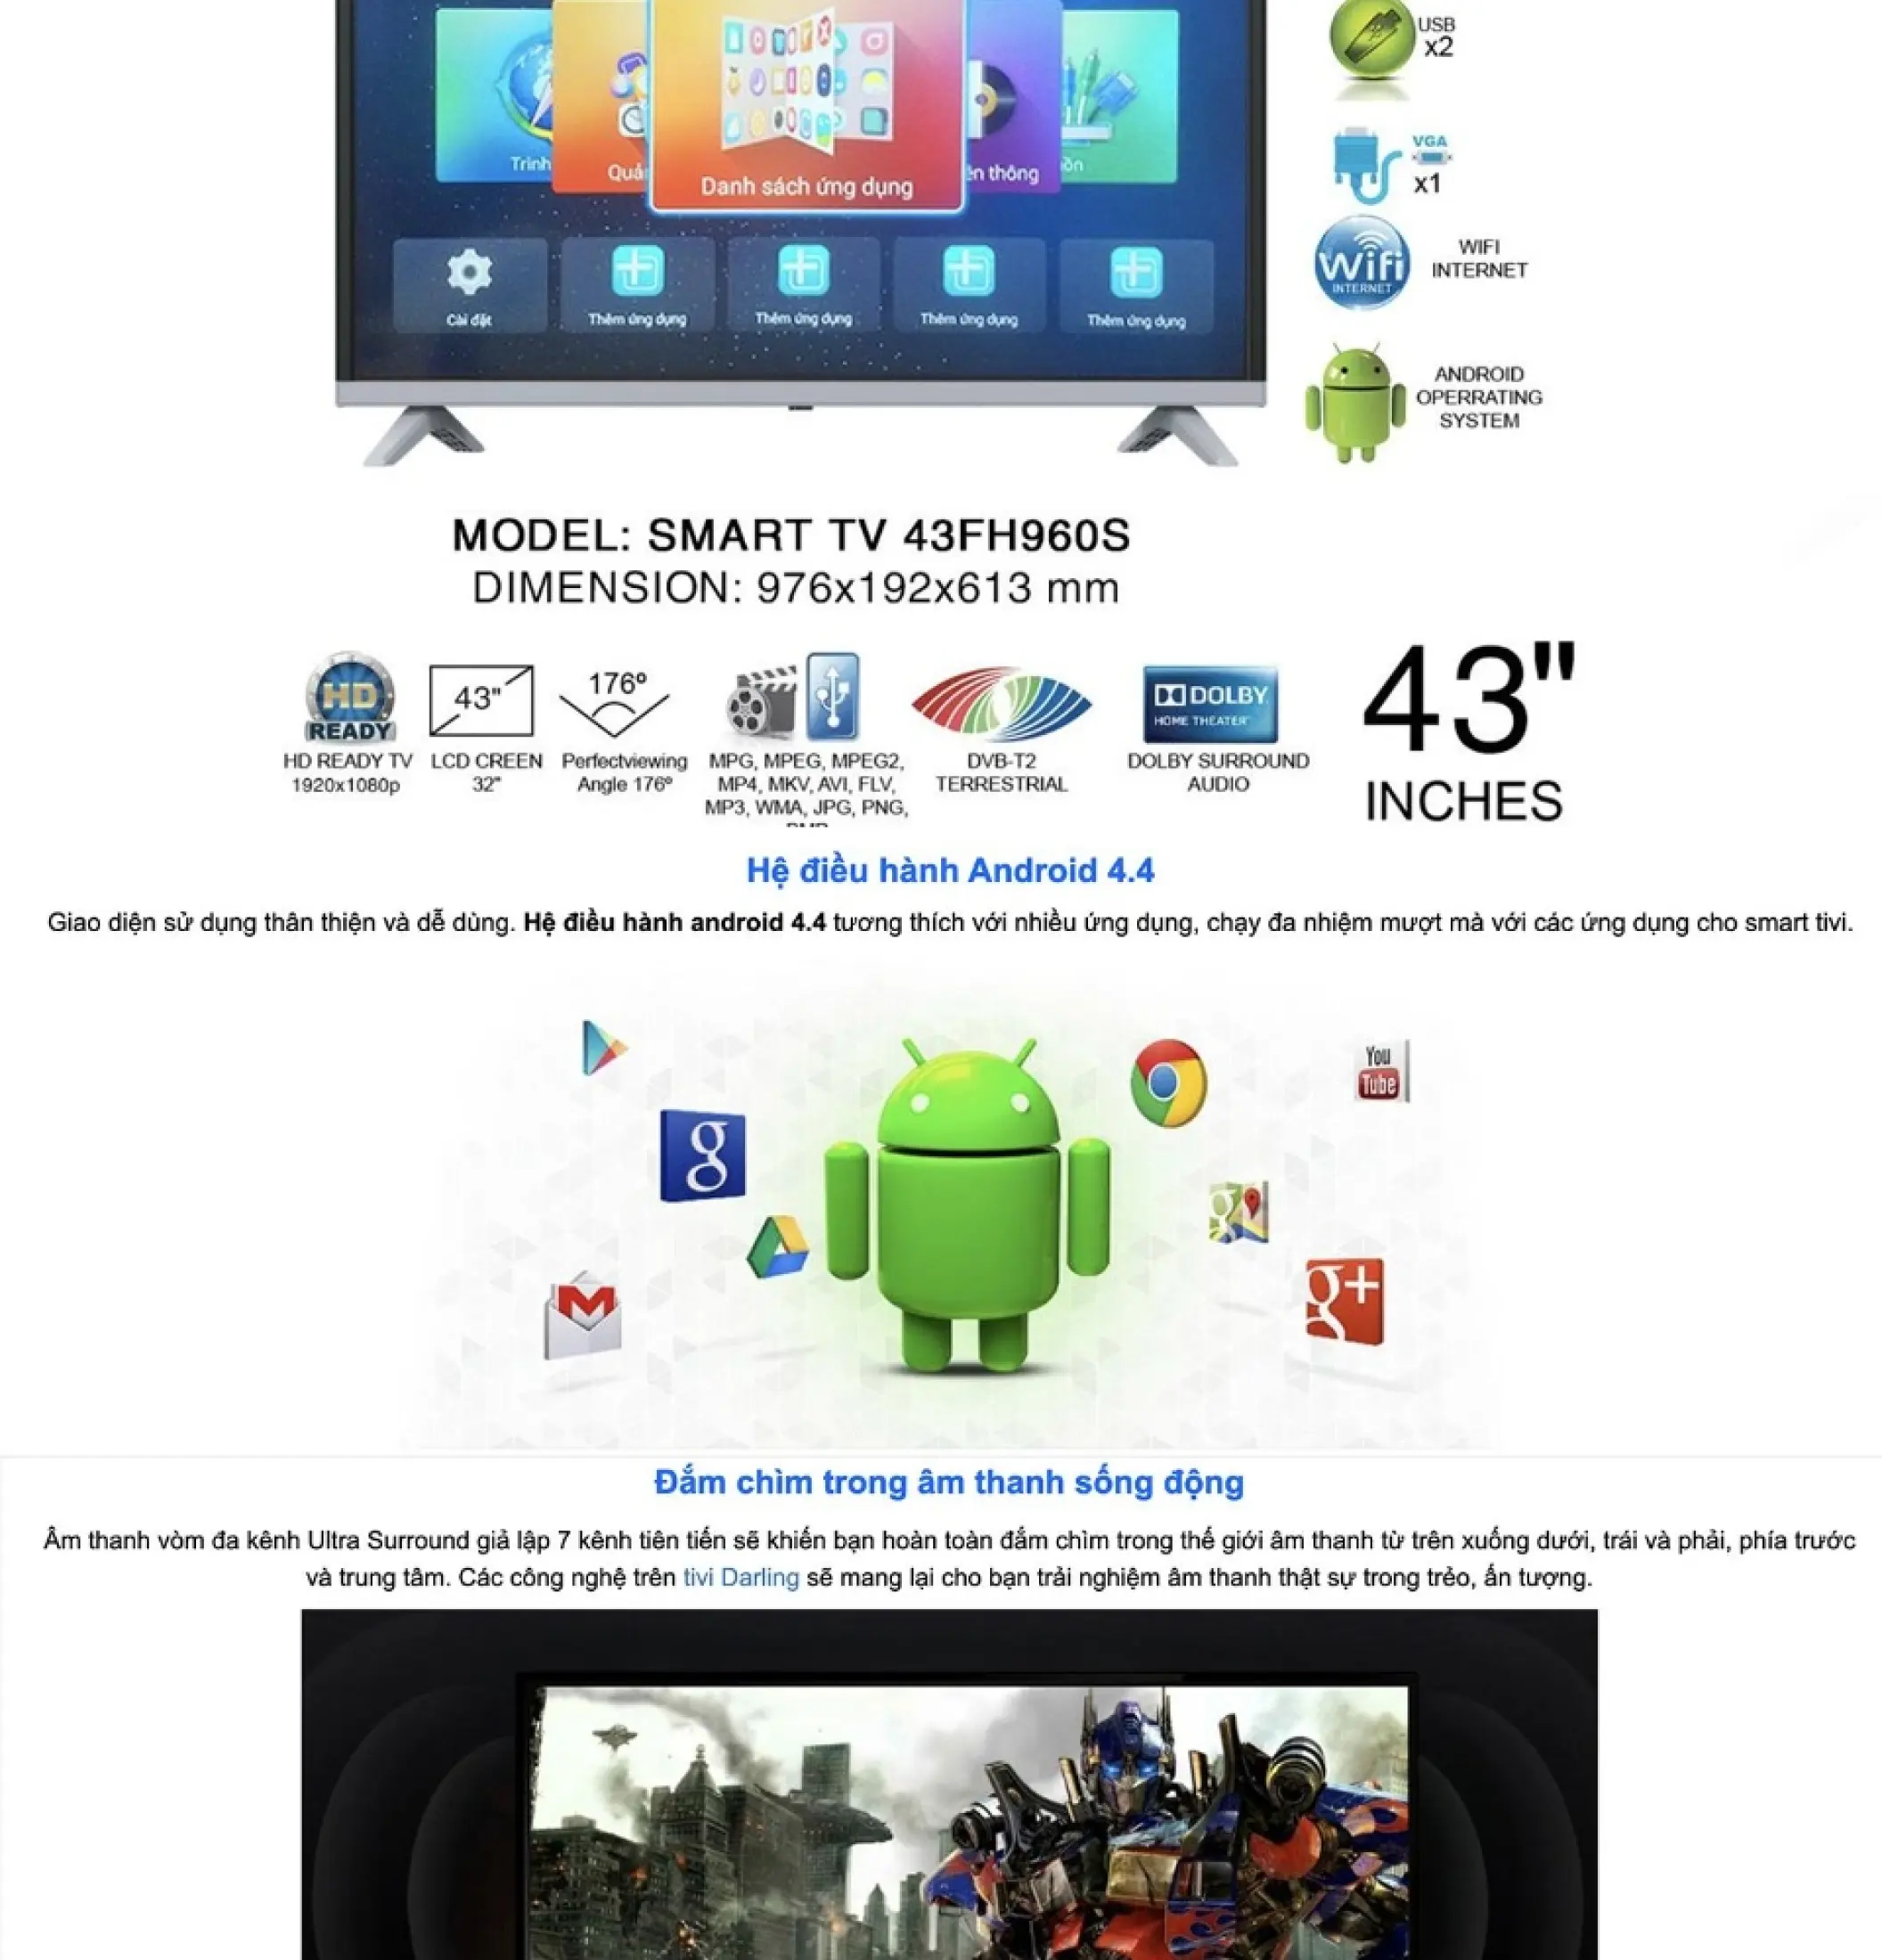 [Sản Phẩm Mới] Smart Tivi Darling 43 inch Full HD - Model 43FH960S Android Tích hợp DVB-T2 Wifi Tivi Giá Rẻ - Bảo Hành 2 Năm